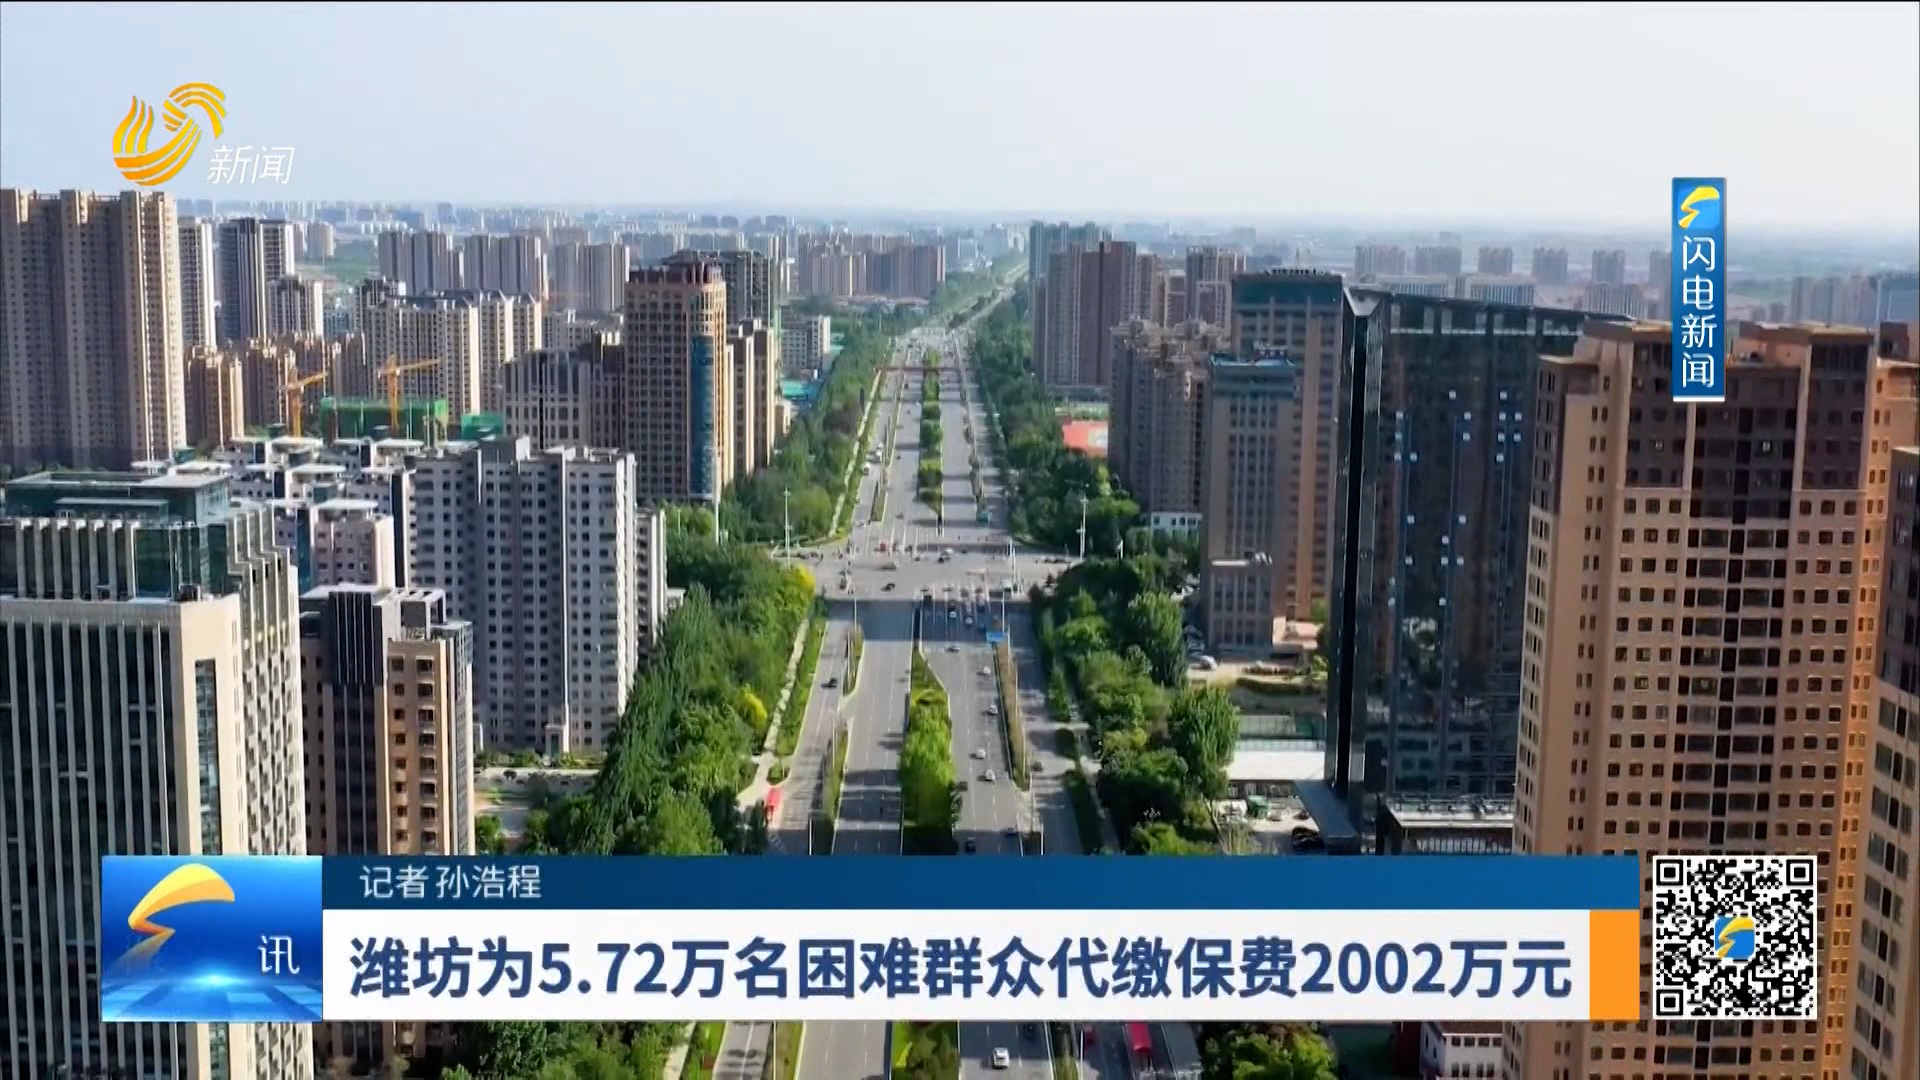 潍坊为5.72万名困难群众代缴保费2002万元